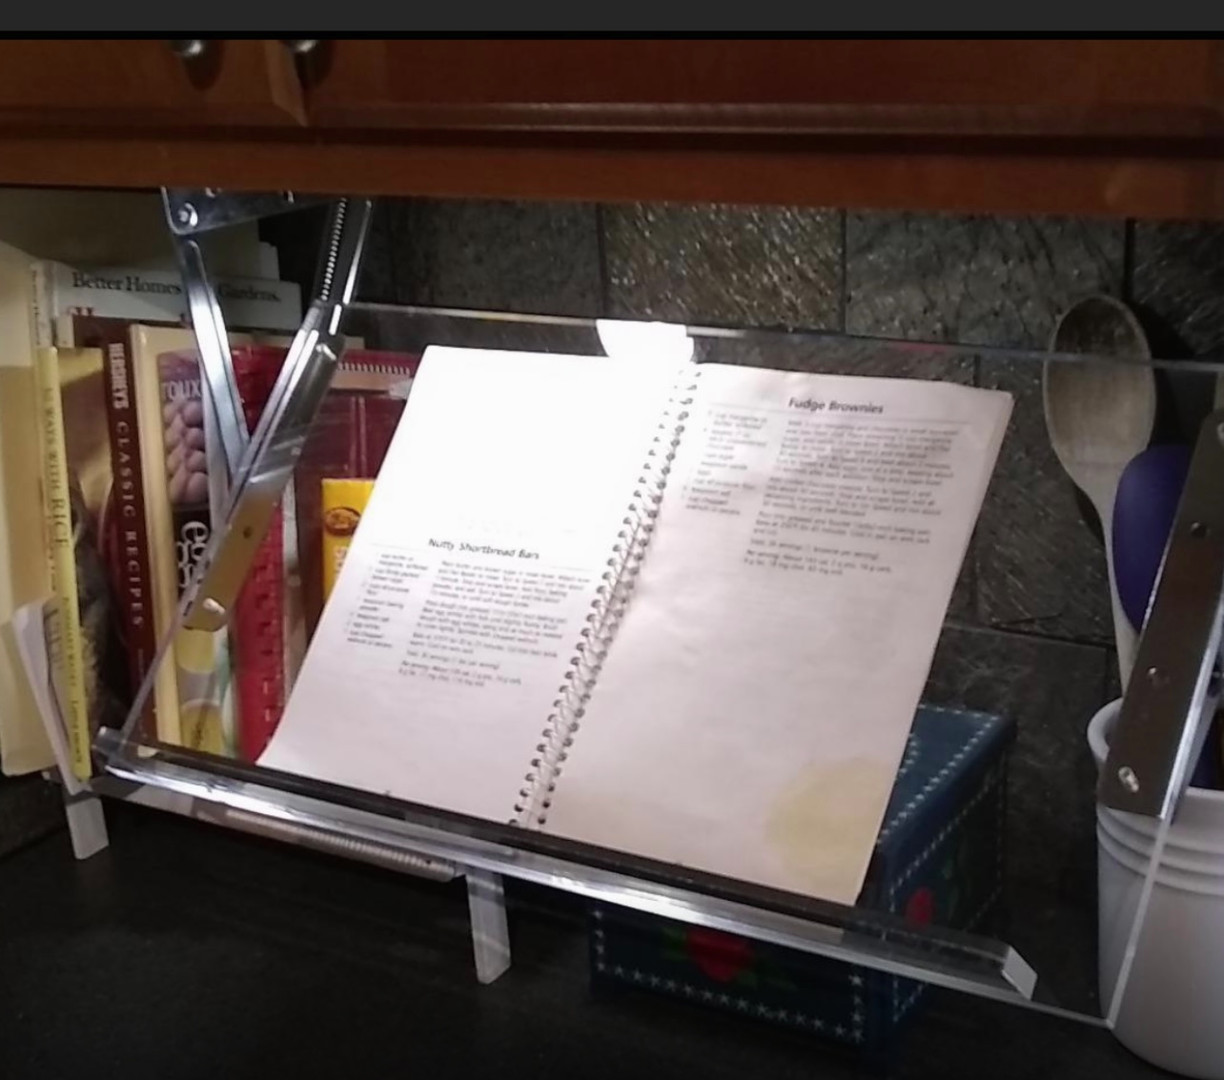 cocina - Soporte para libros de cocina montado debajo del gabinete en acrílico